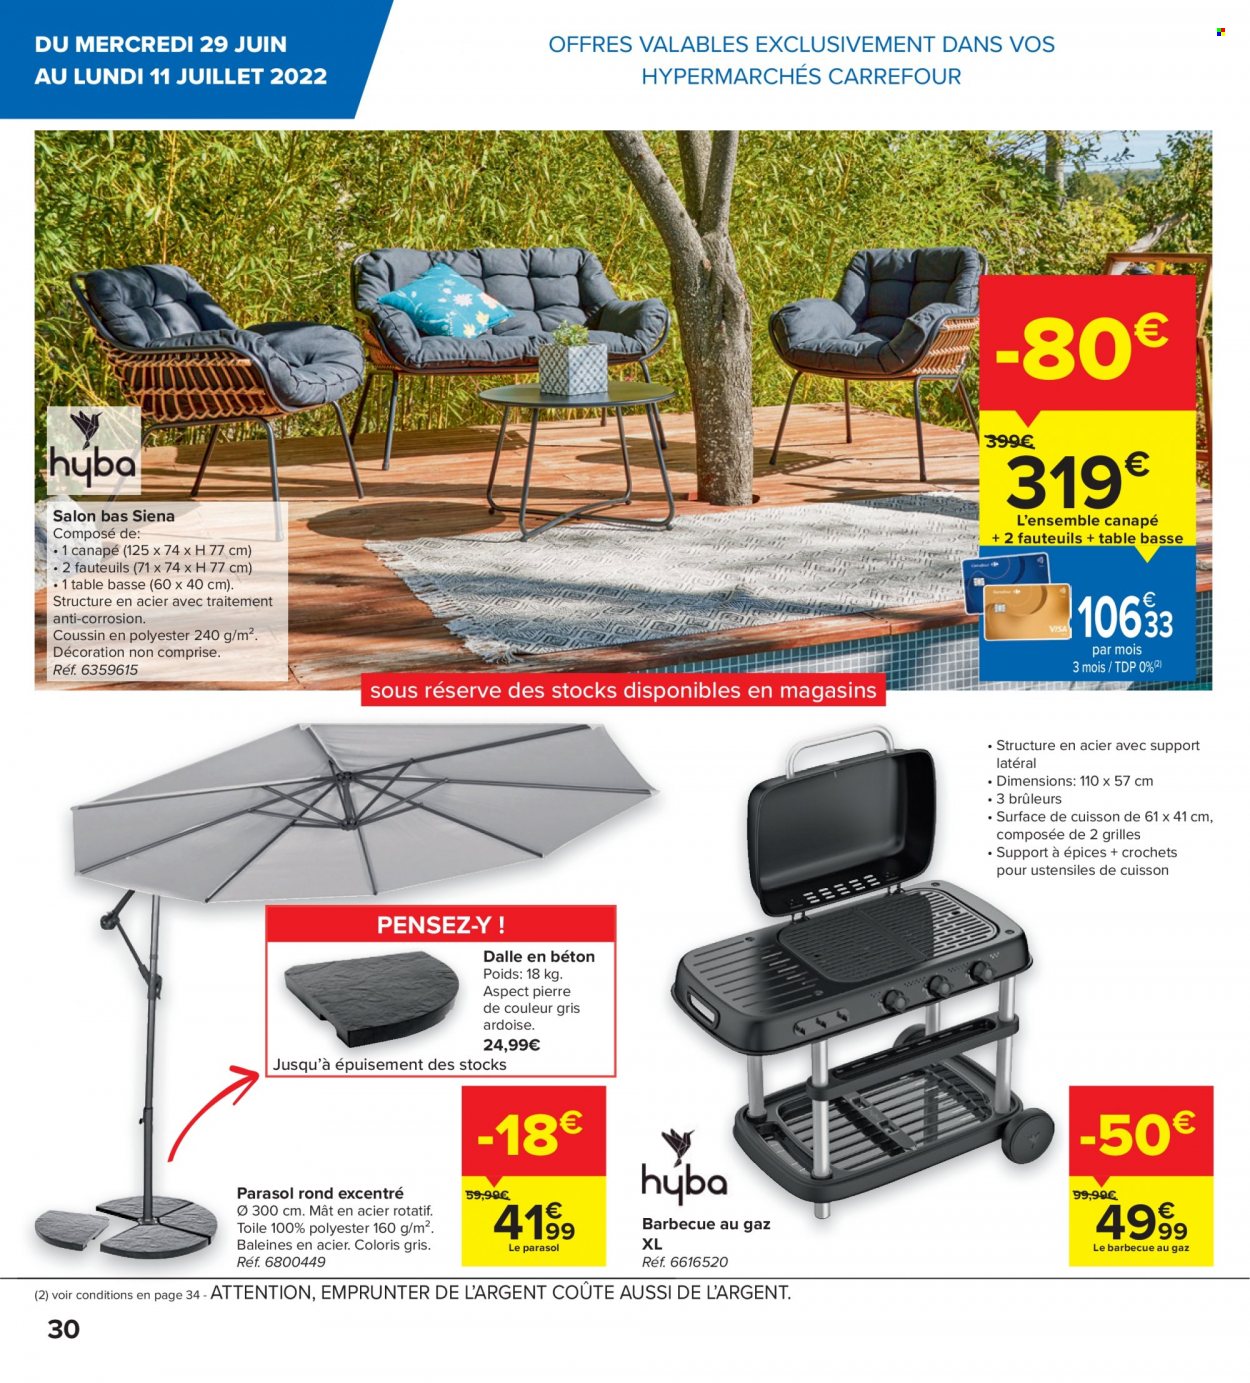 thumbnail - Catalogue Carrefour hypermarkt - 29/06/2022 - 11/07/2022 - Produits soldés - table, parasol, barbecue. Page 10.